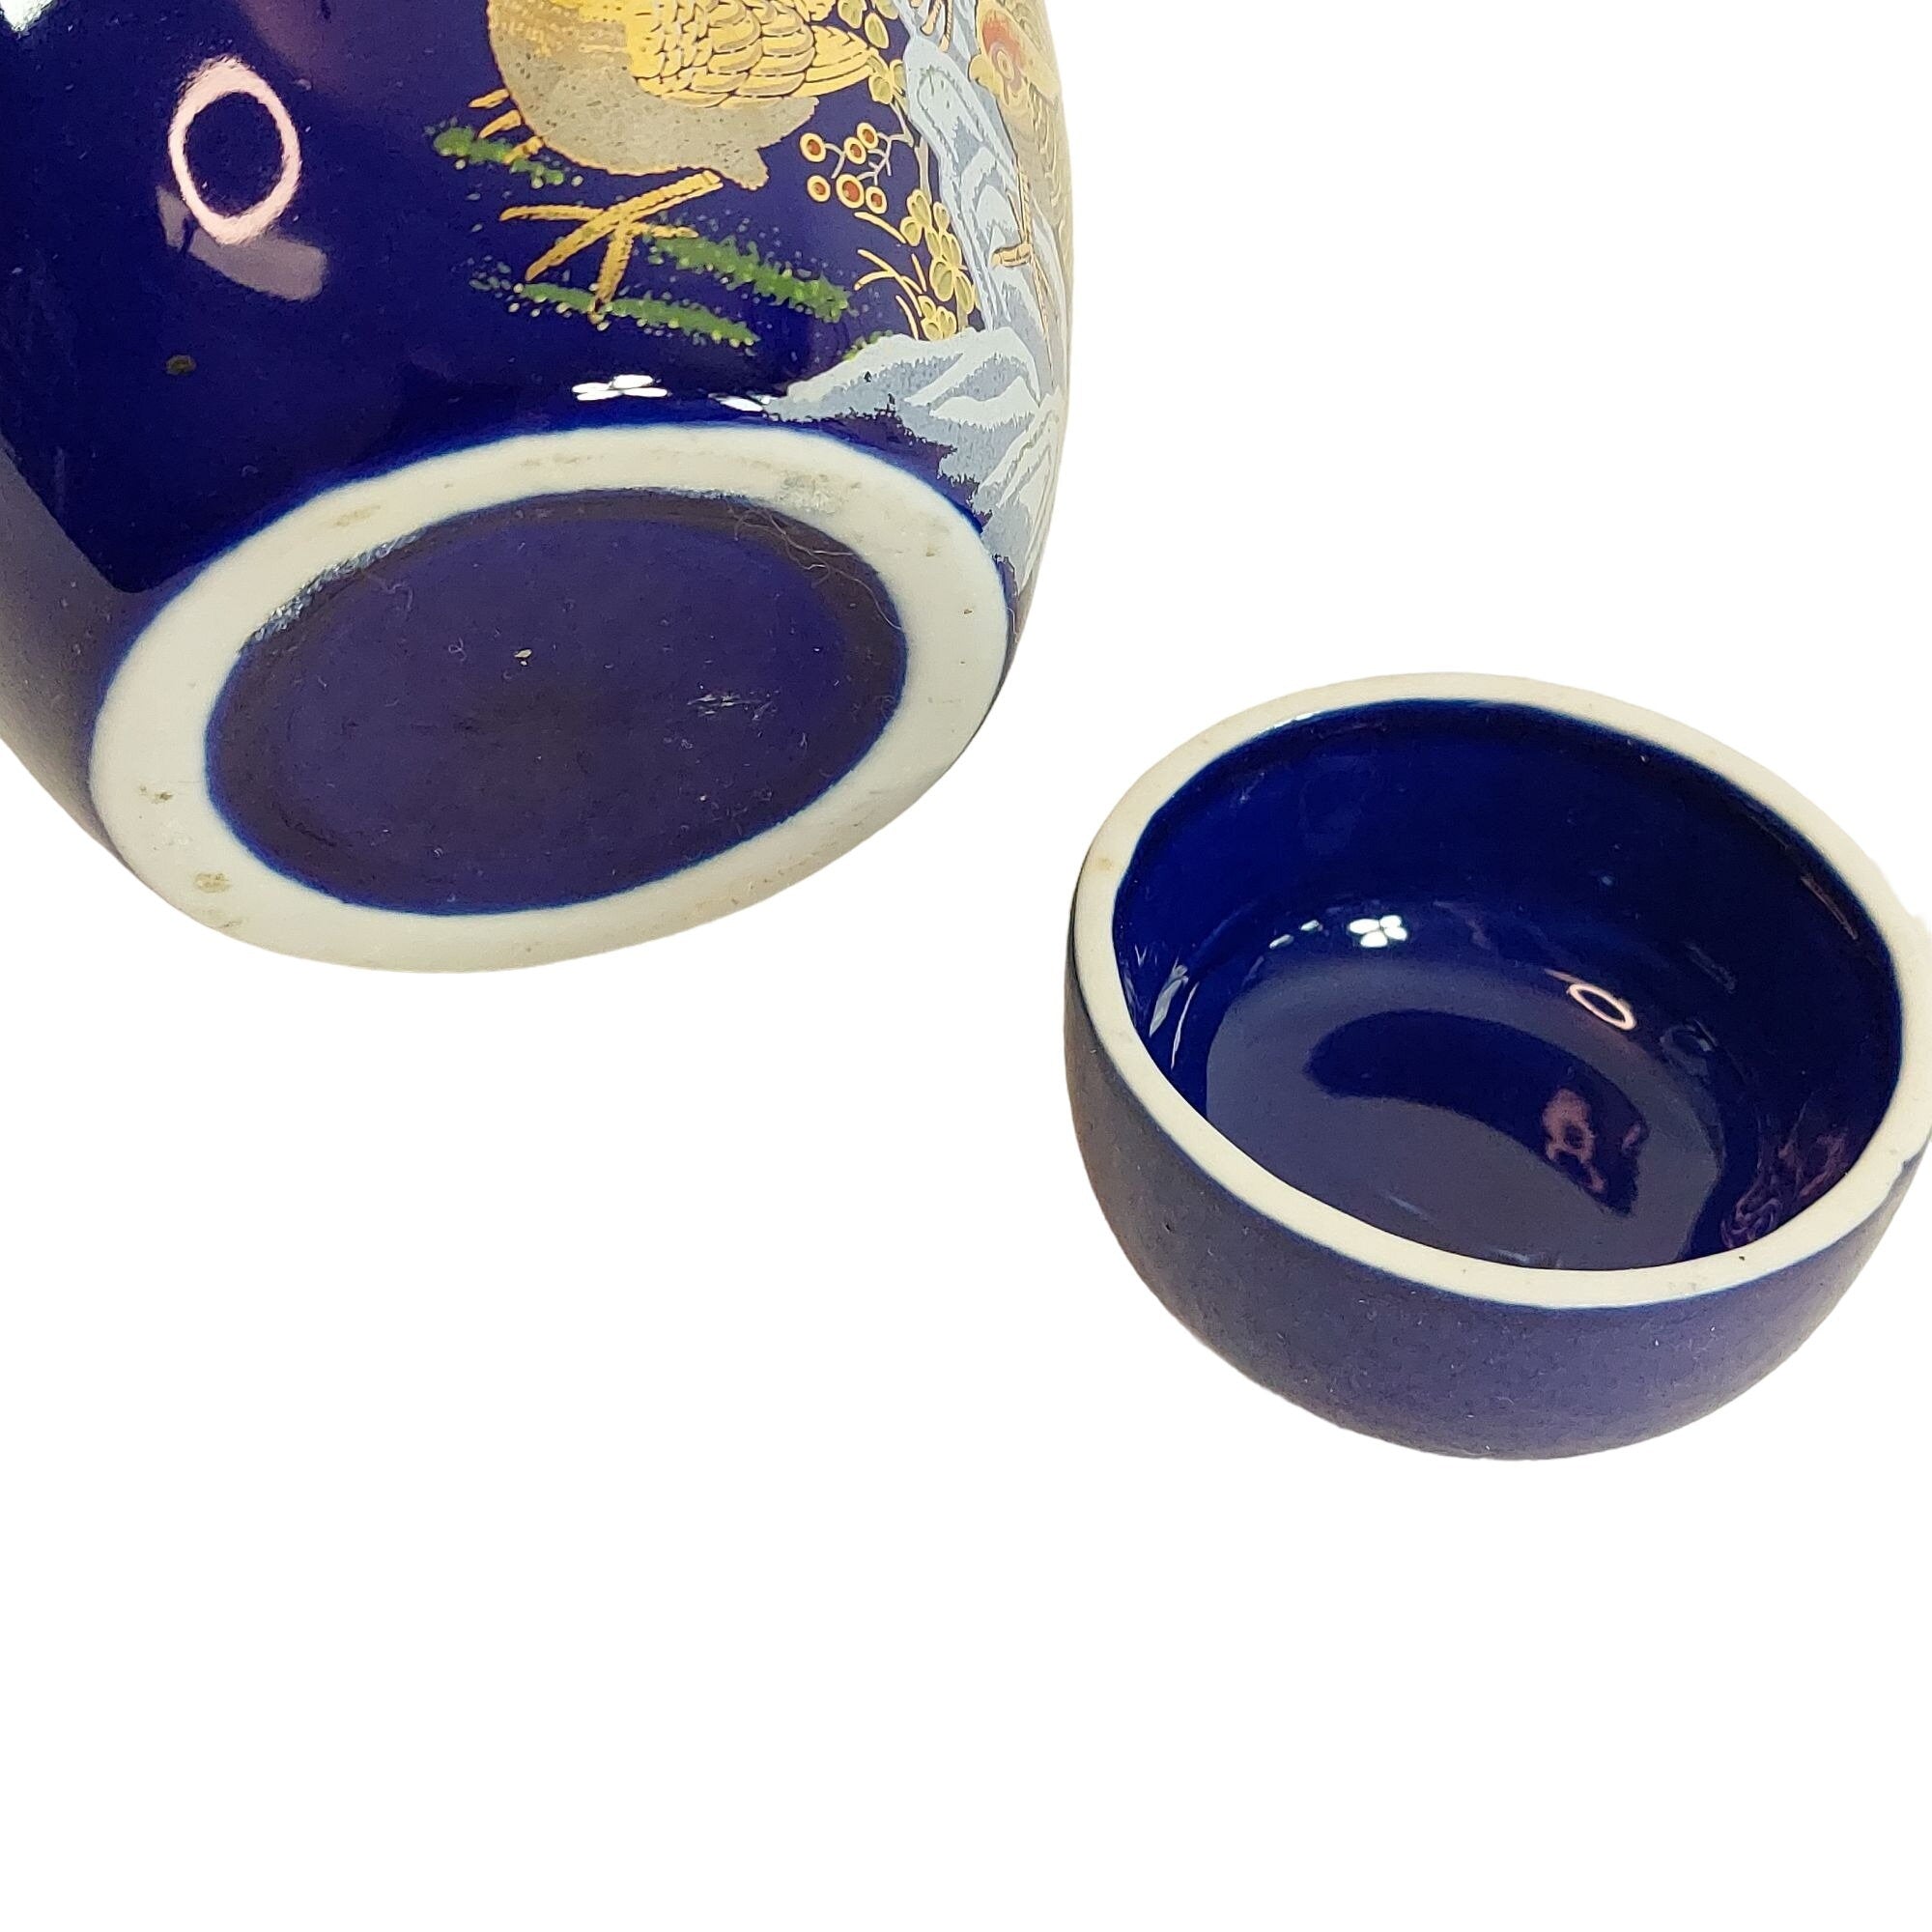 Ginger Jar Pheasant Design Details Cobalt Blue Gold Accents Vintage Decor 5.25"